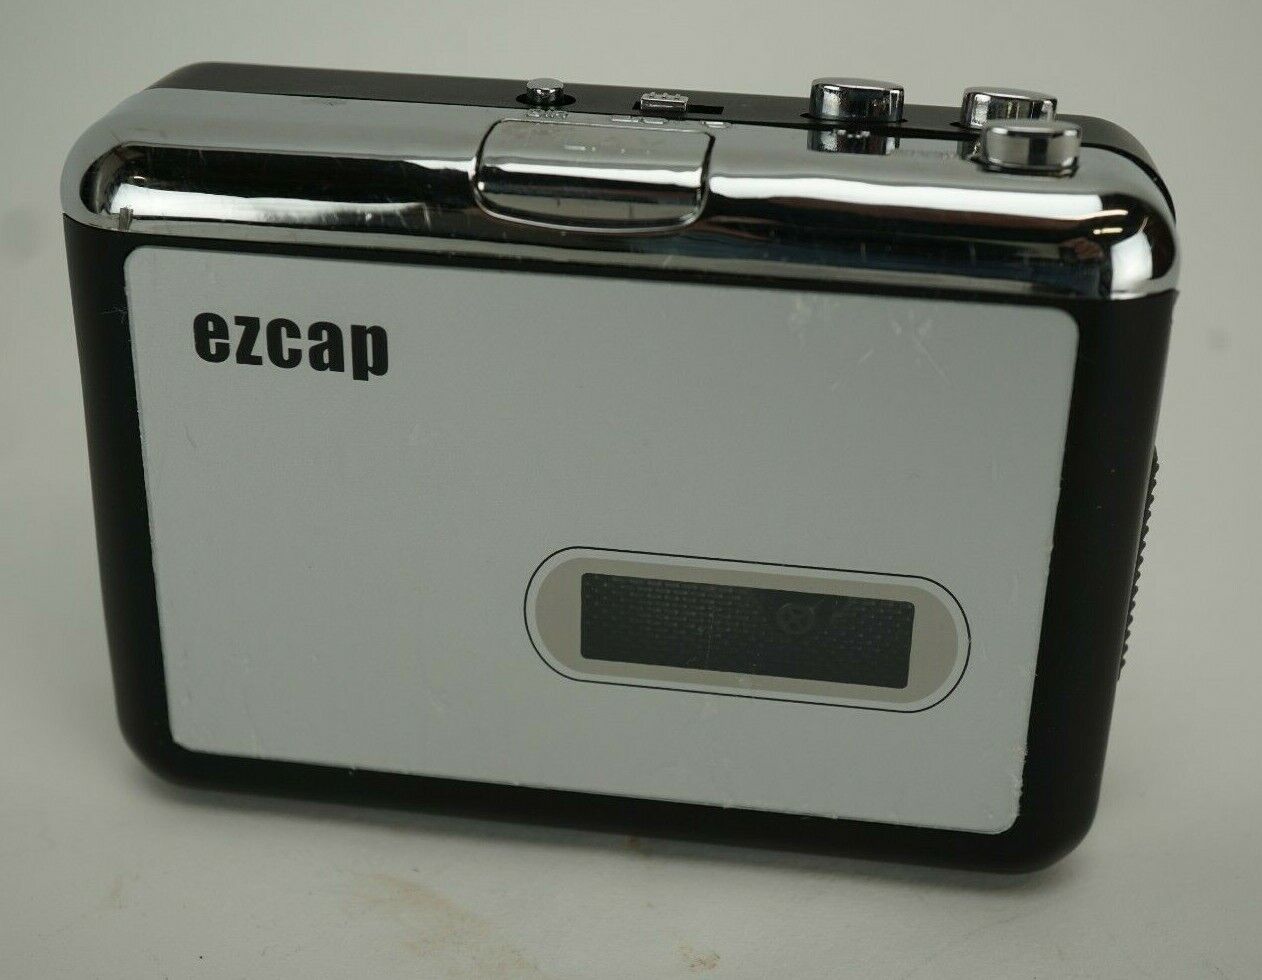 ezcap cassette to mp3 converter